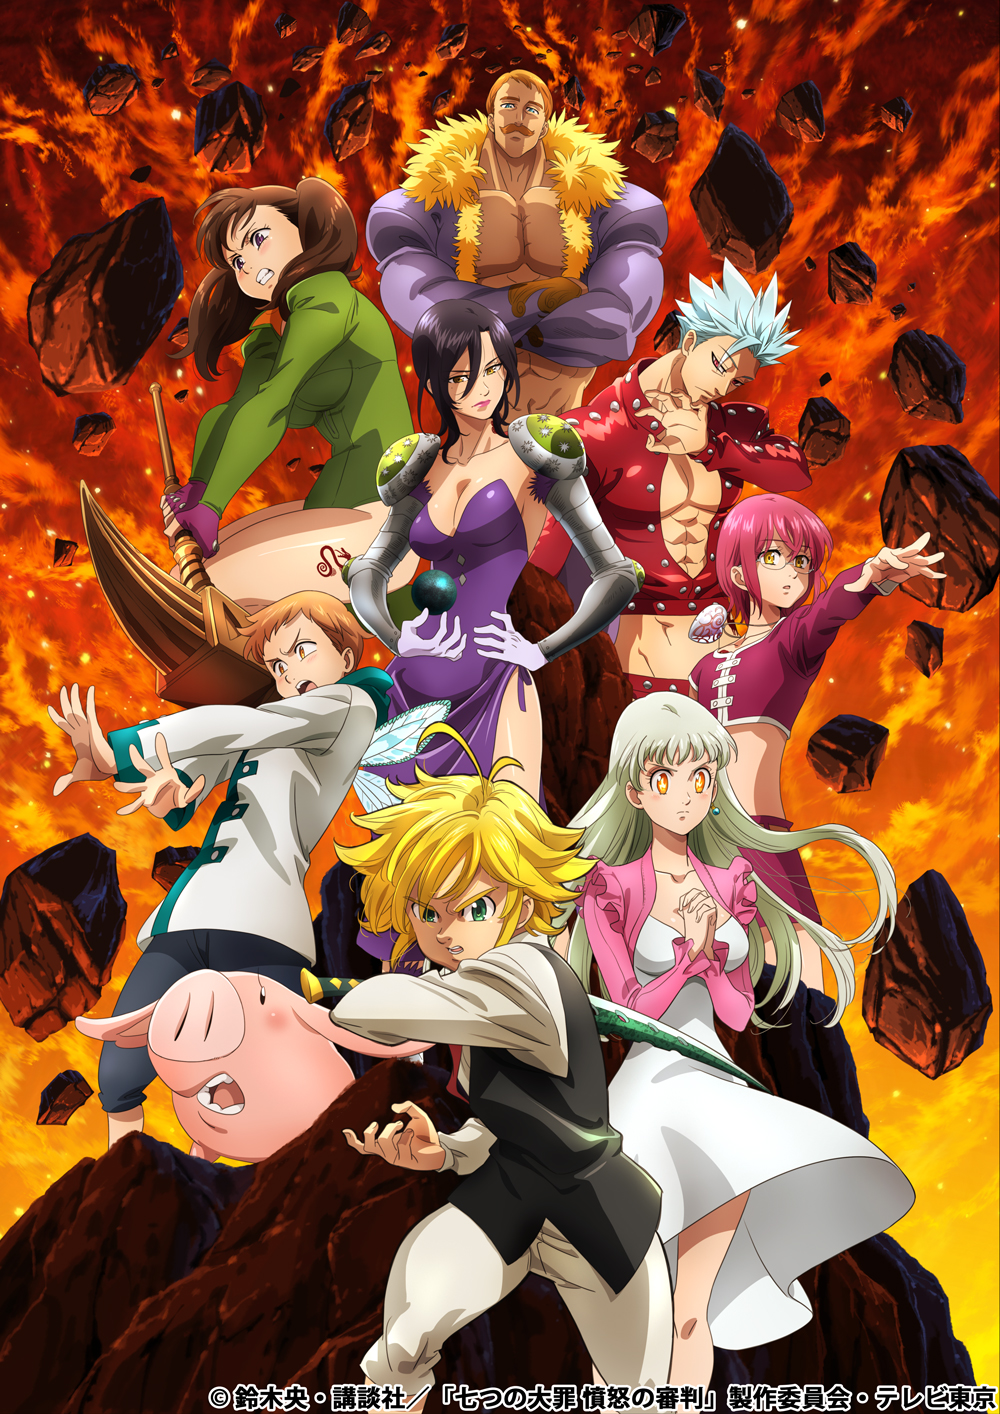 七つの大罪 憤怒の審判 放送は21年1月よりスタート 七つの大罪 メンバーを描いたティザービジュアル公開 Anime Recorder